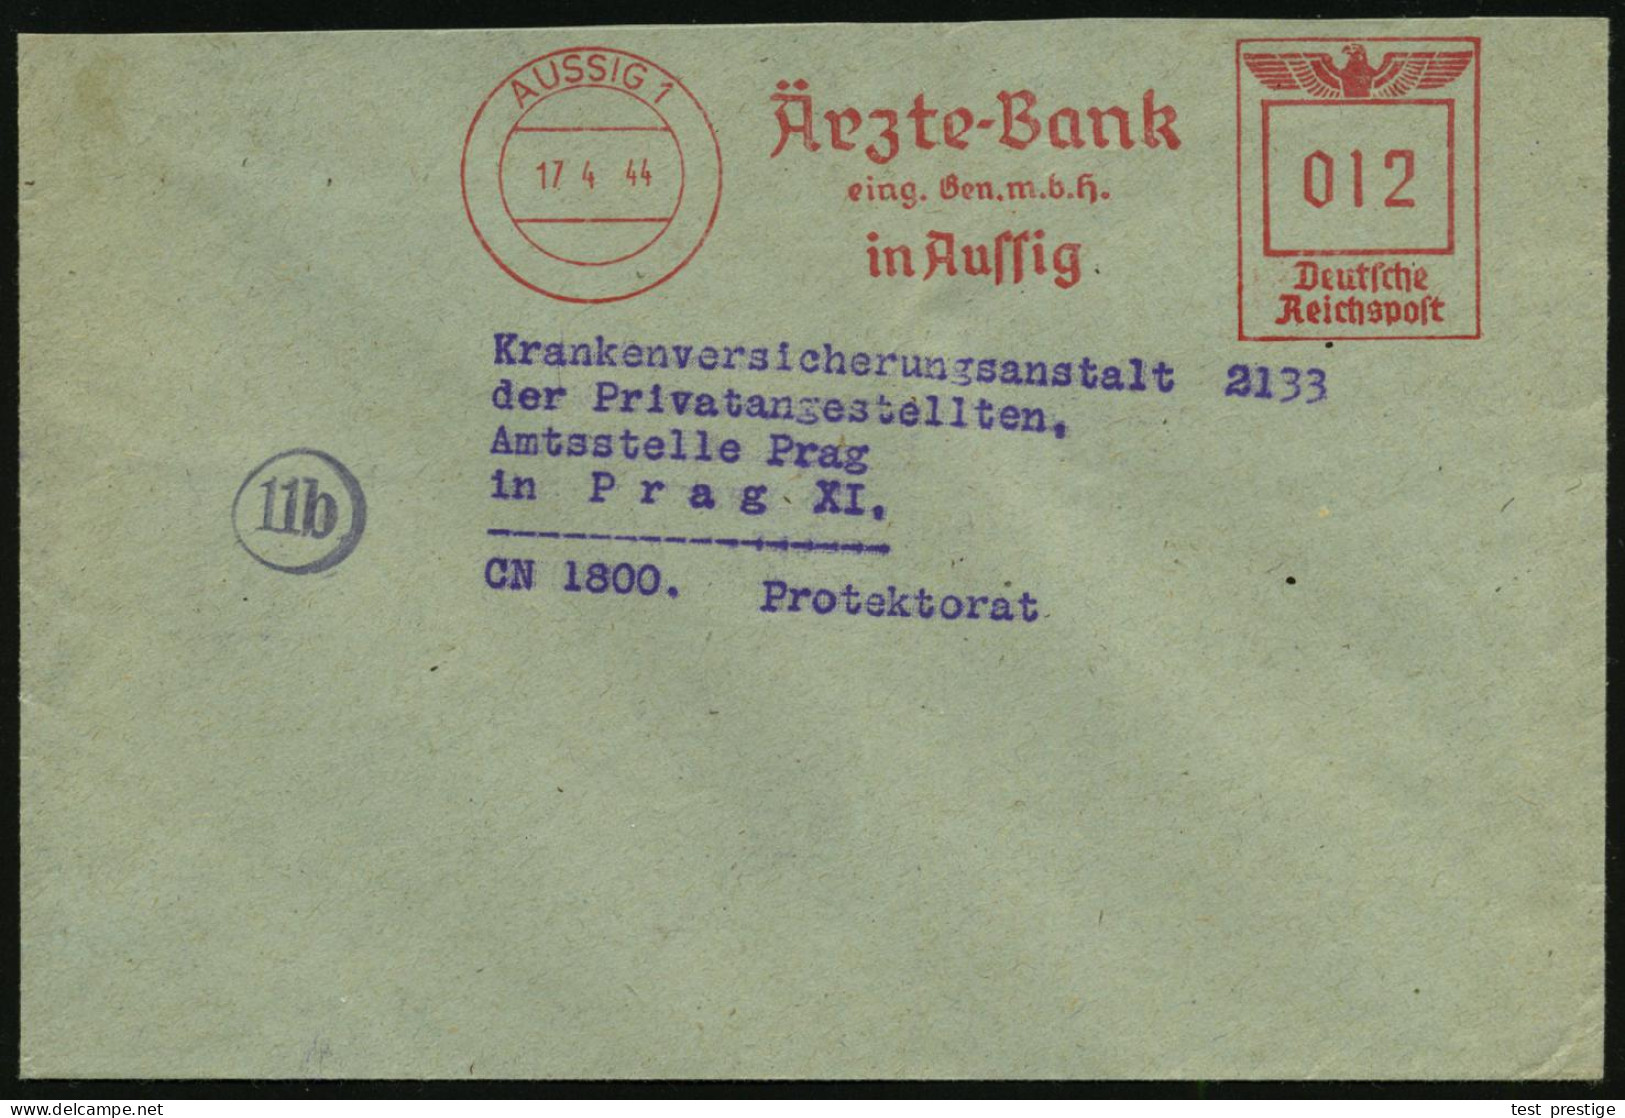 AUSSIG 1/ Ärzte-Bank/ Eing.Gen.m.b.H. 1944 (17.4.) AFS 012 Pf. Inl.-Tarif N. Prag (Böhmen & Mähren = Besetzte CSR), Klar - Medicine